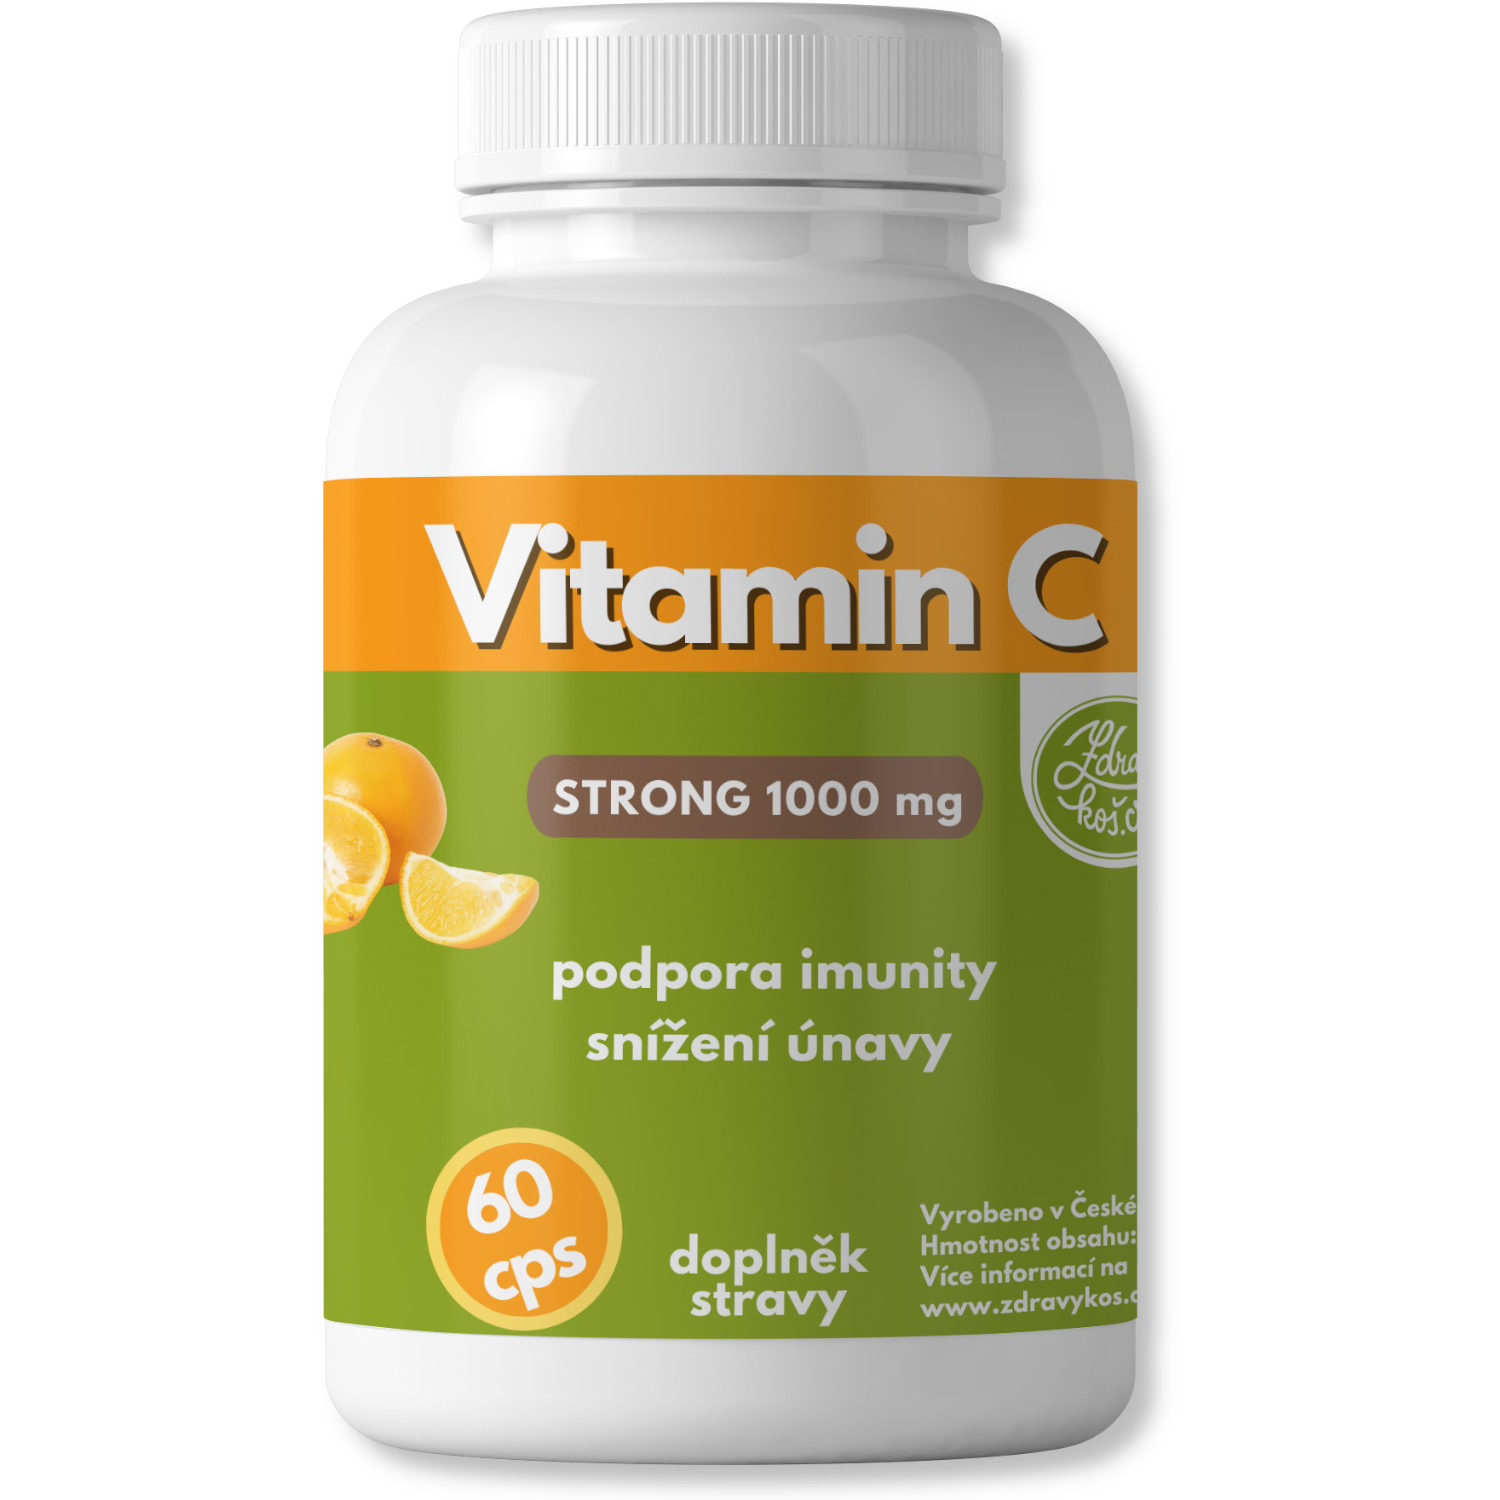 Zdravýkoš Vitamin C STRONG 1000mg 60cps